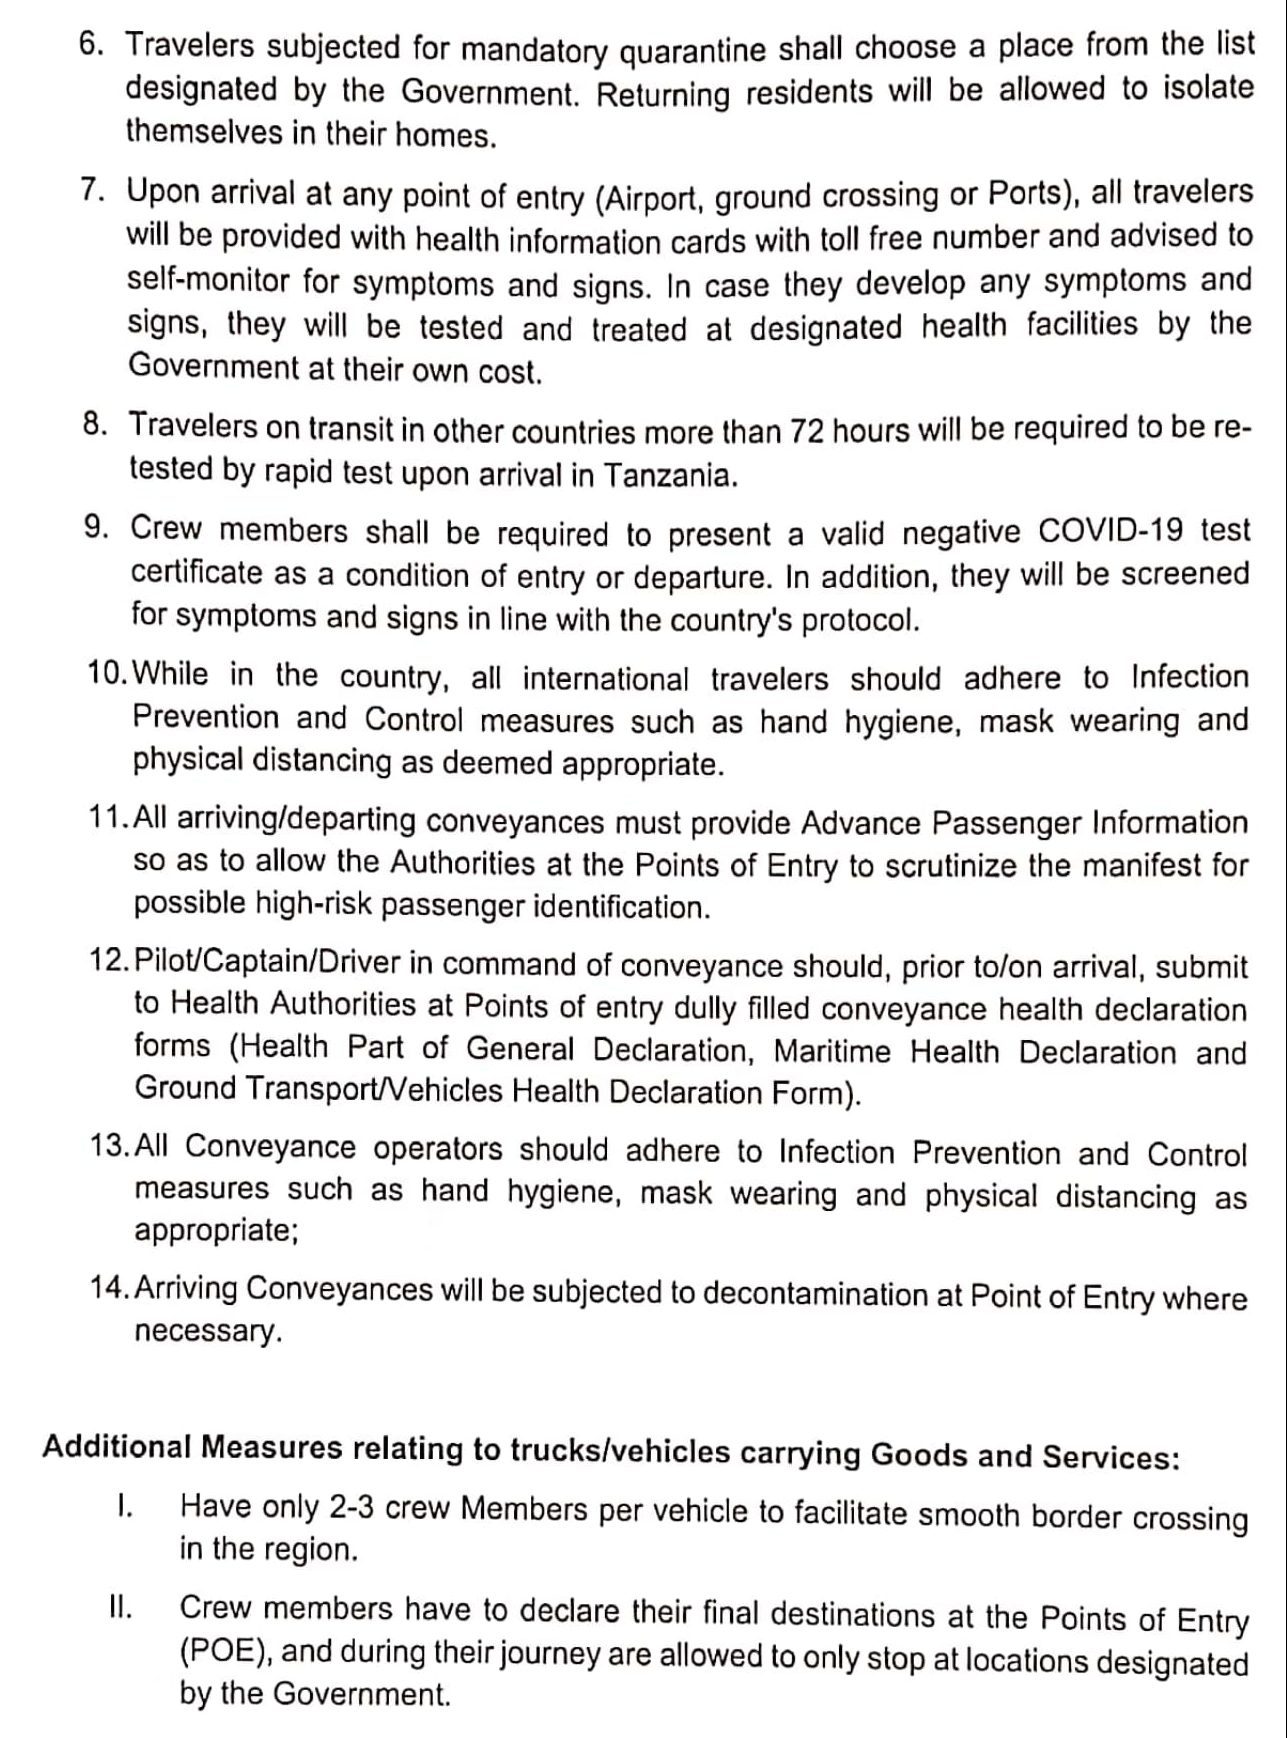 COVID-19 Policy Tanzania Page 2